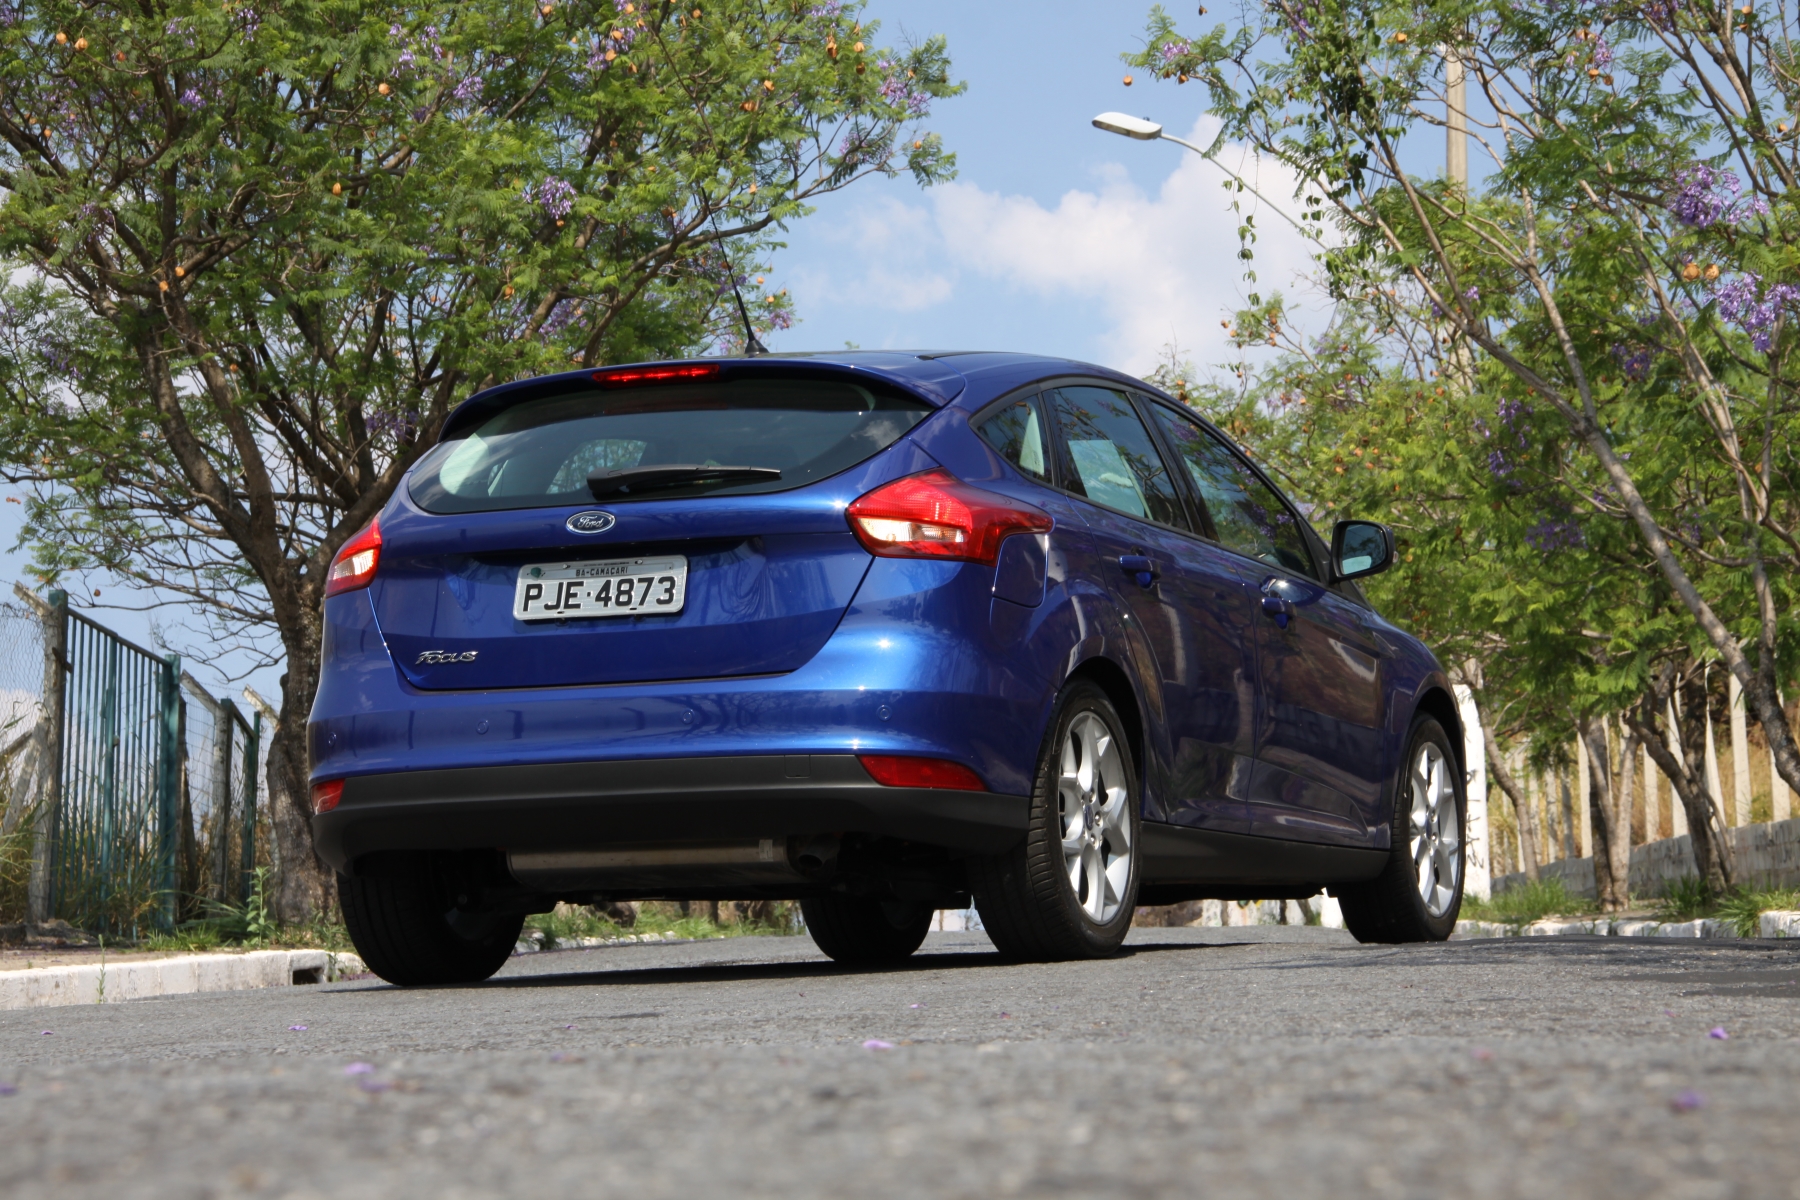 ford focus se 1.6 hatch medio modelo 2015 azul escuro de traseira no asfalto estatico